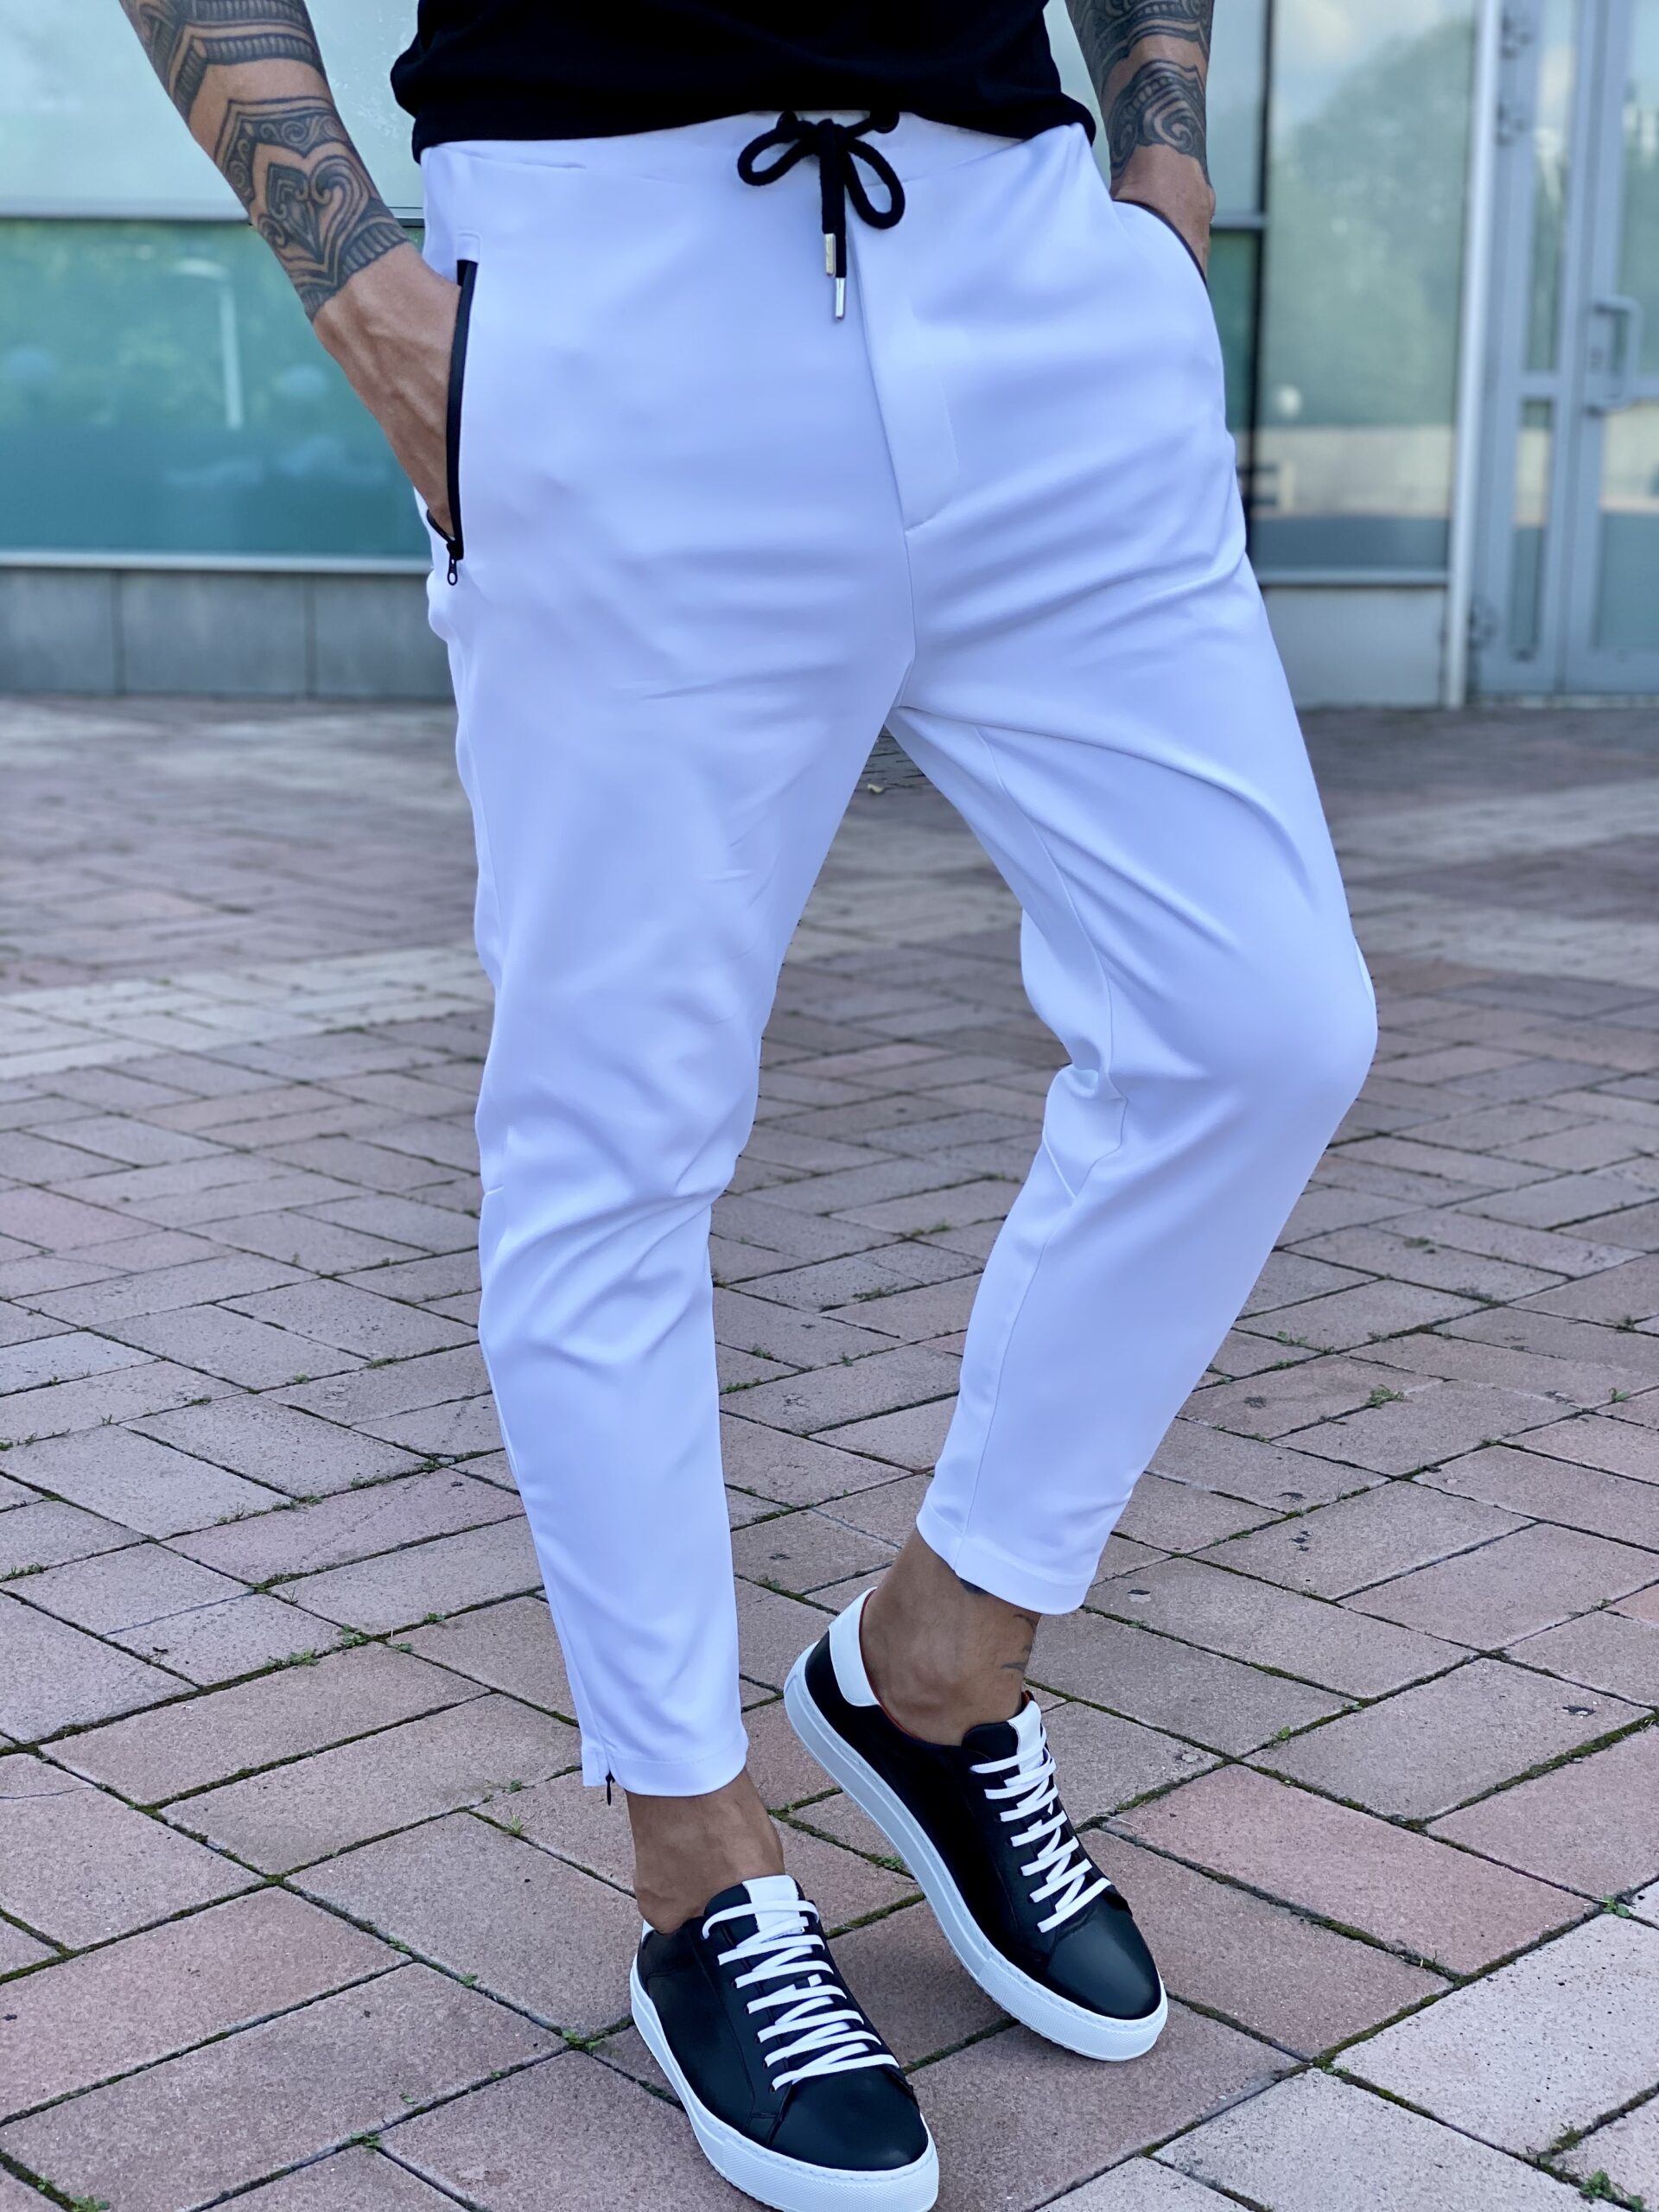 Белые укороченные брюки в стиле спорт шик. Арт.: 2477 – купить в магазинемужской одежды Smartcasuals